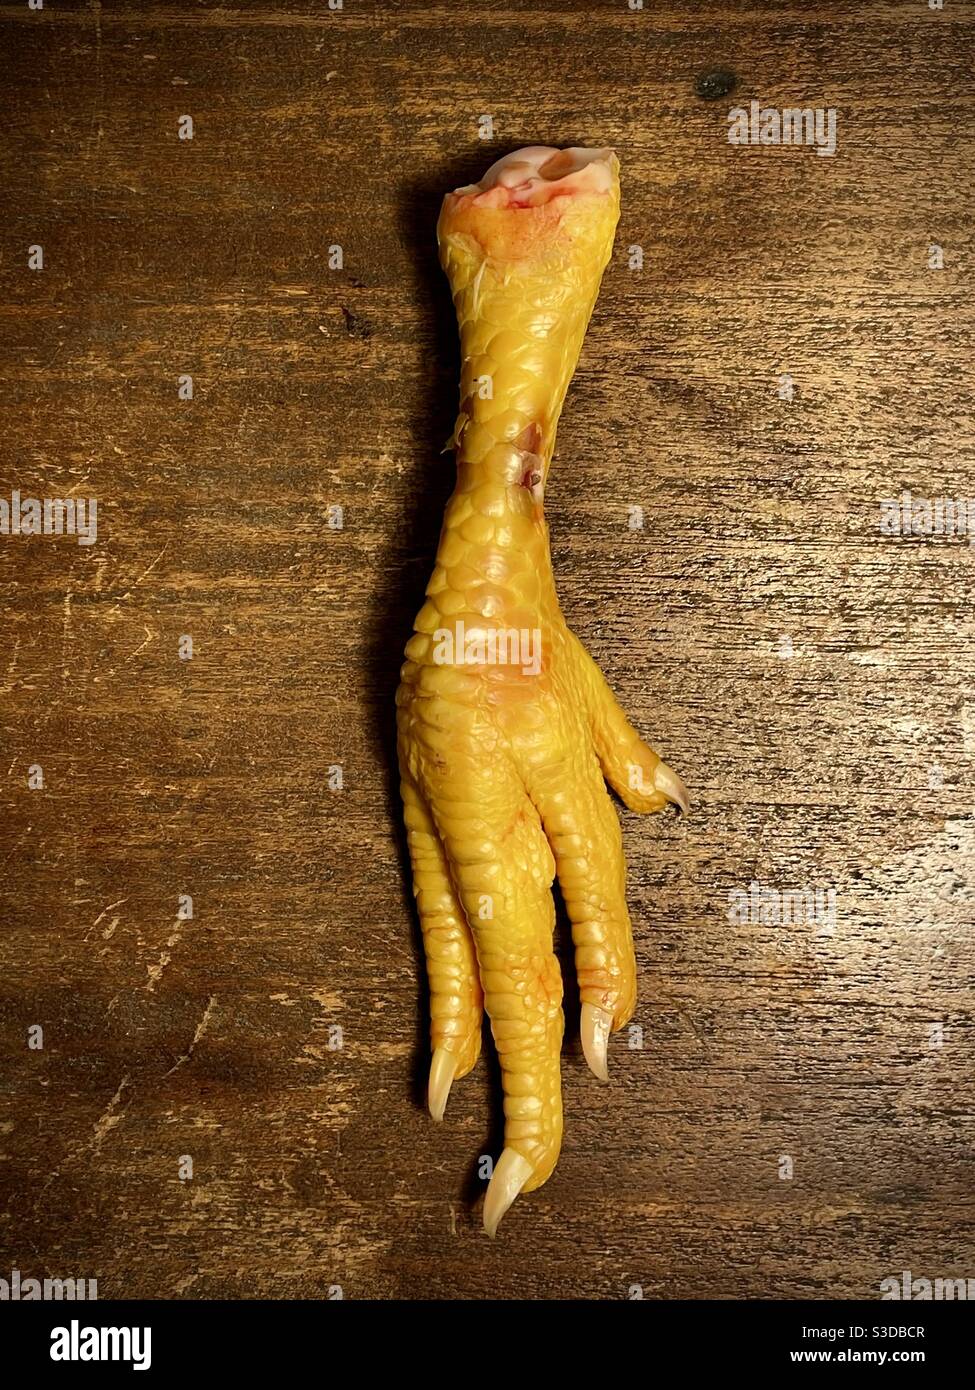 Chicken feet still life Stock Photo